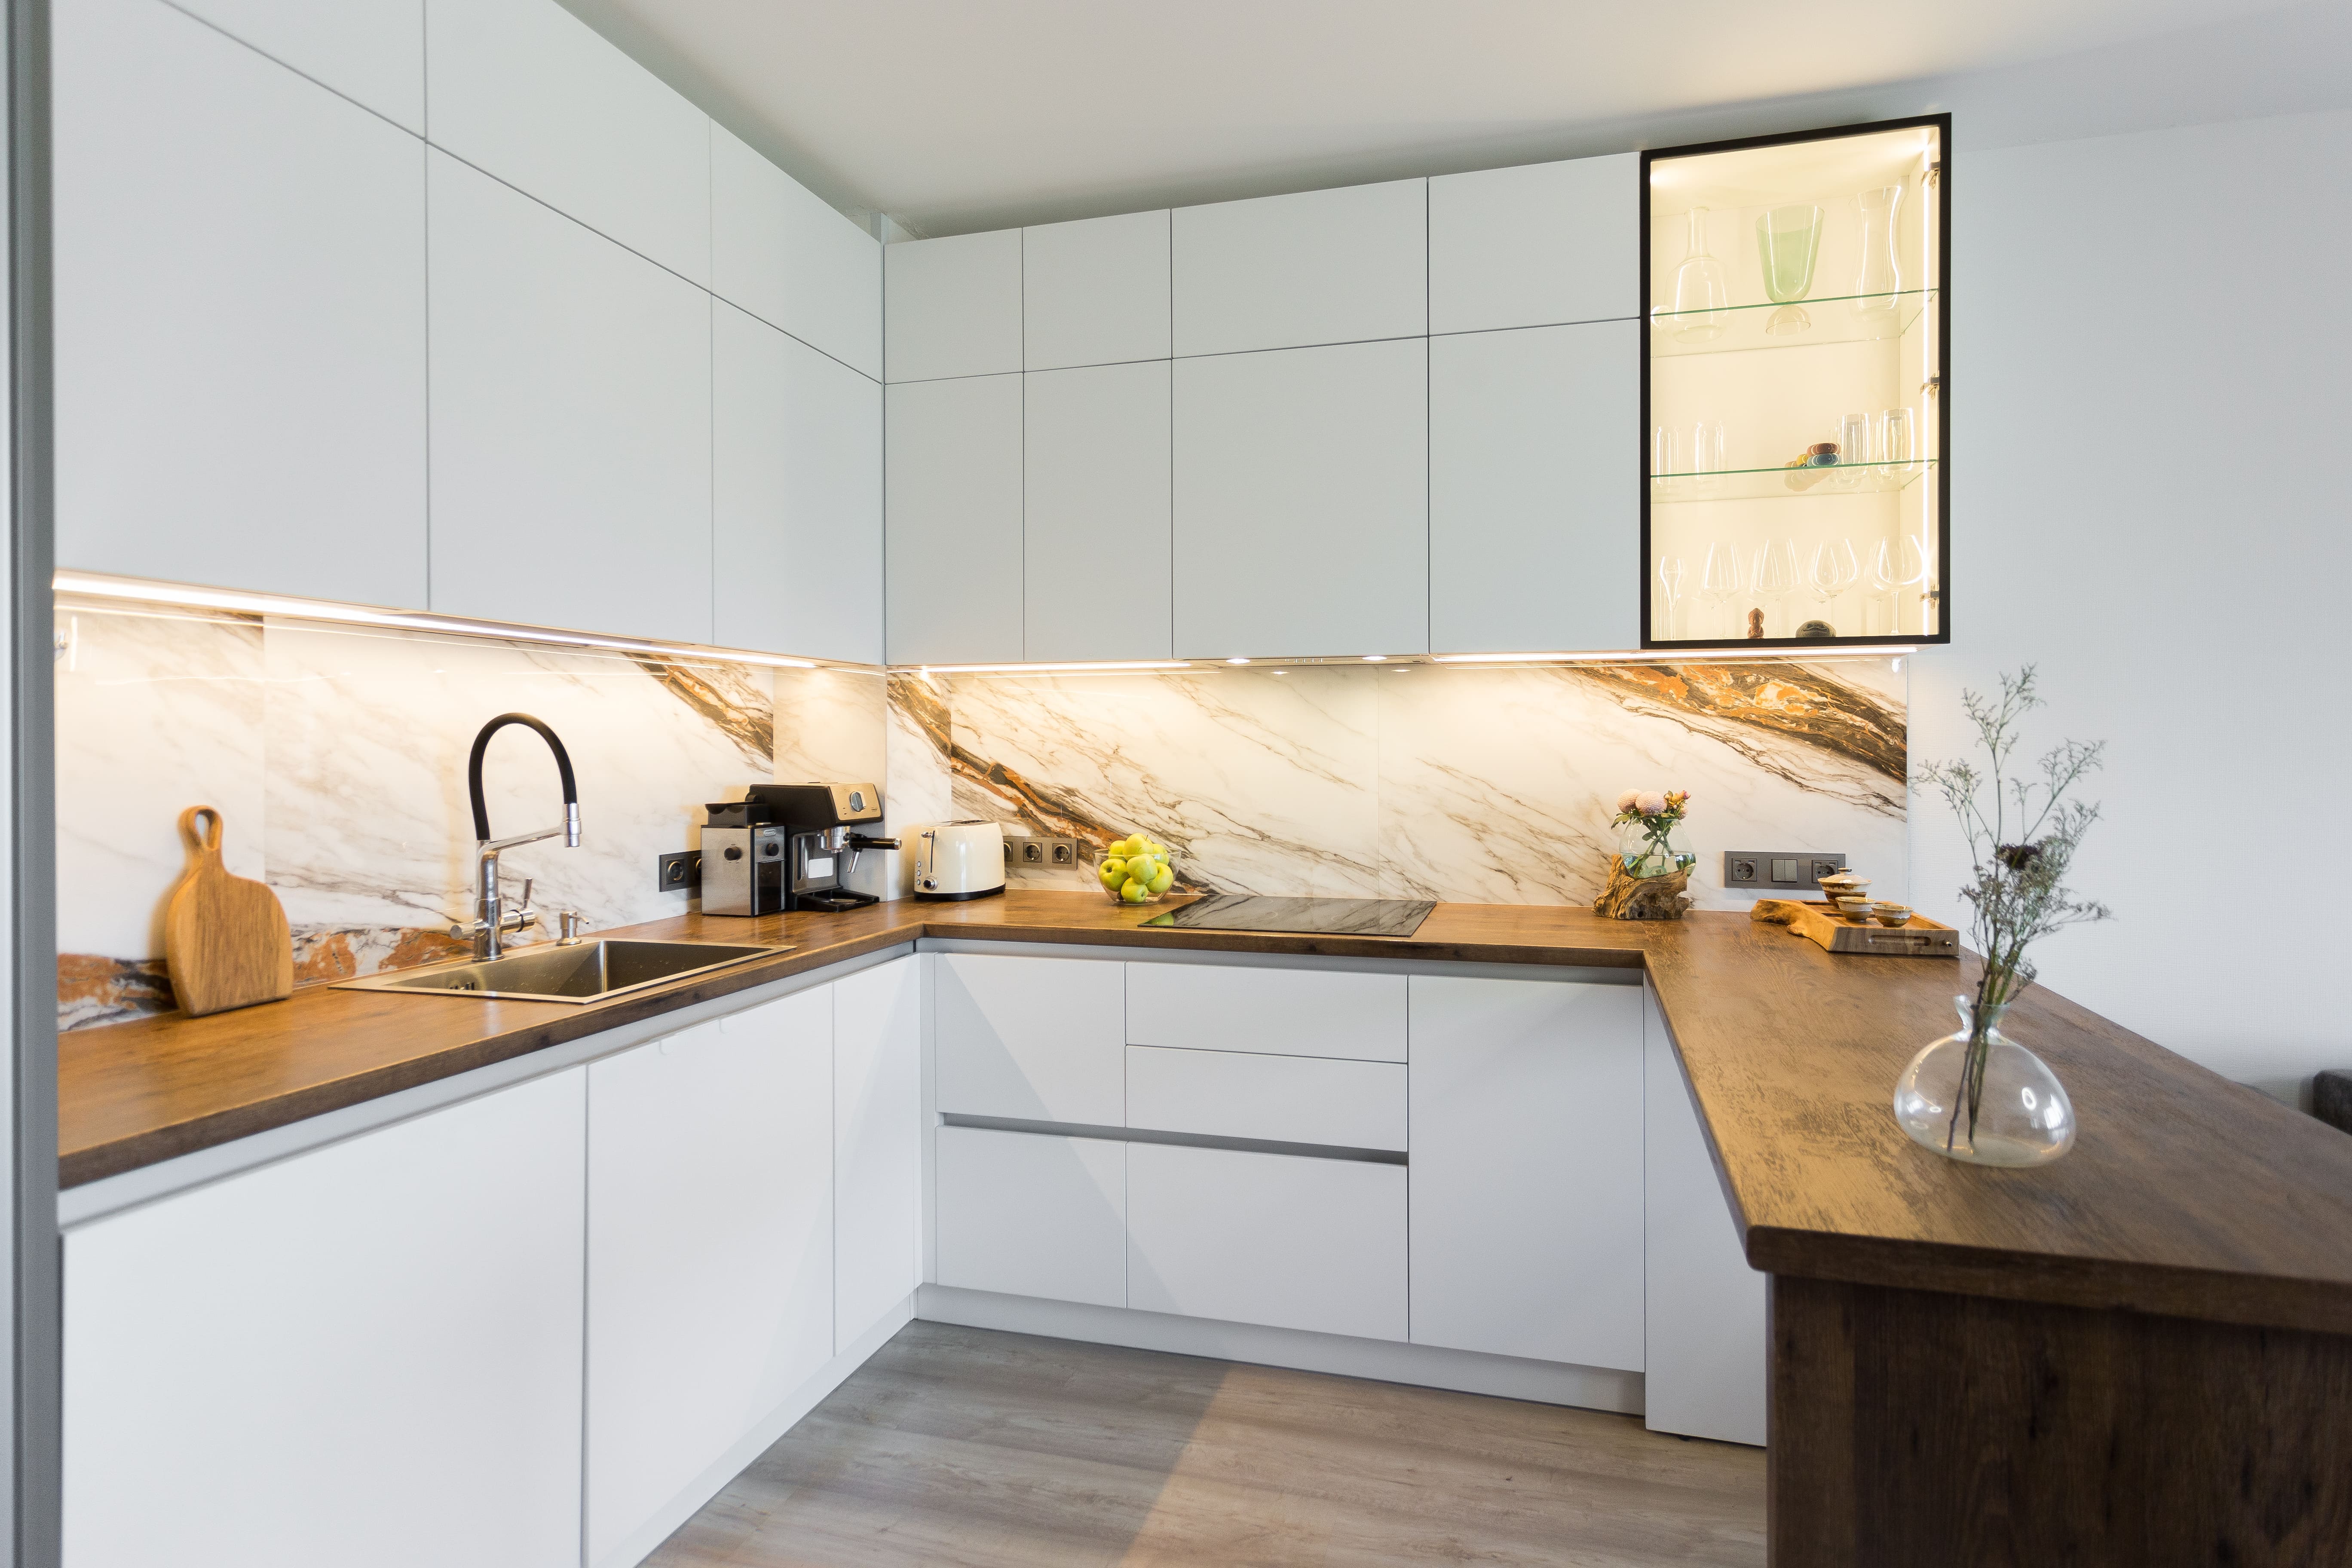 Какие стили дизайна подходят для угловых кухонь: минимализм, скандинавский стиль, классический стиль